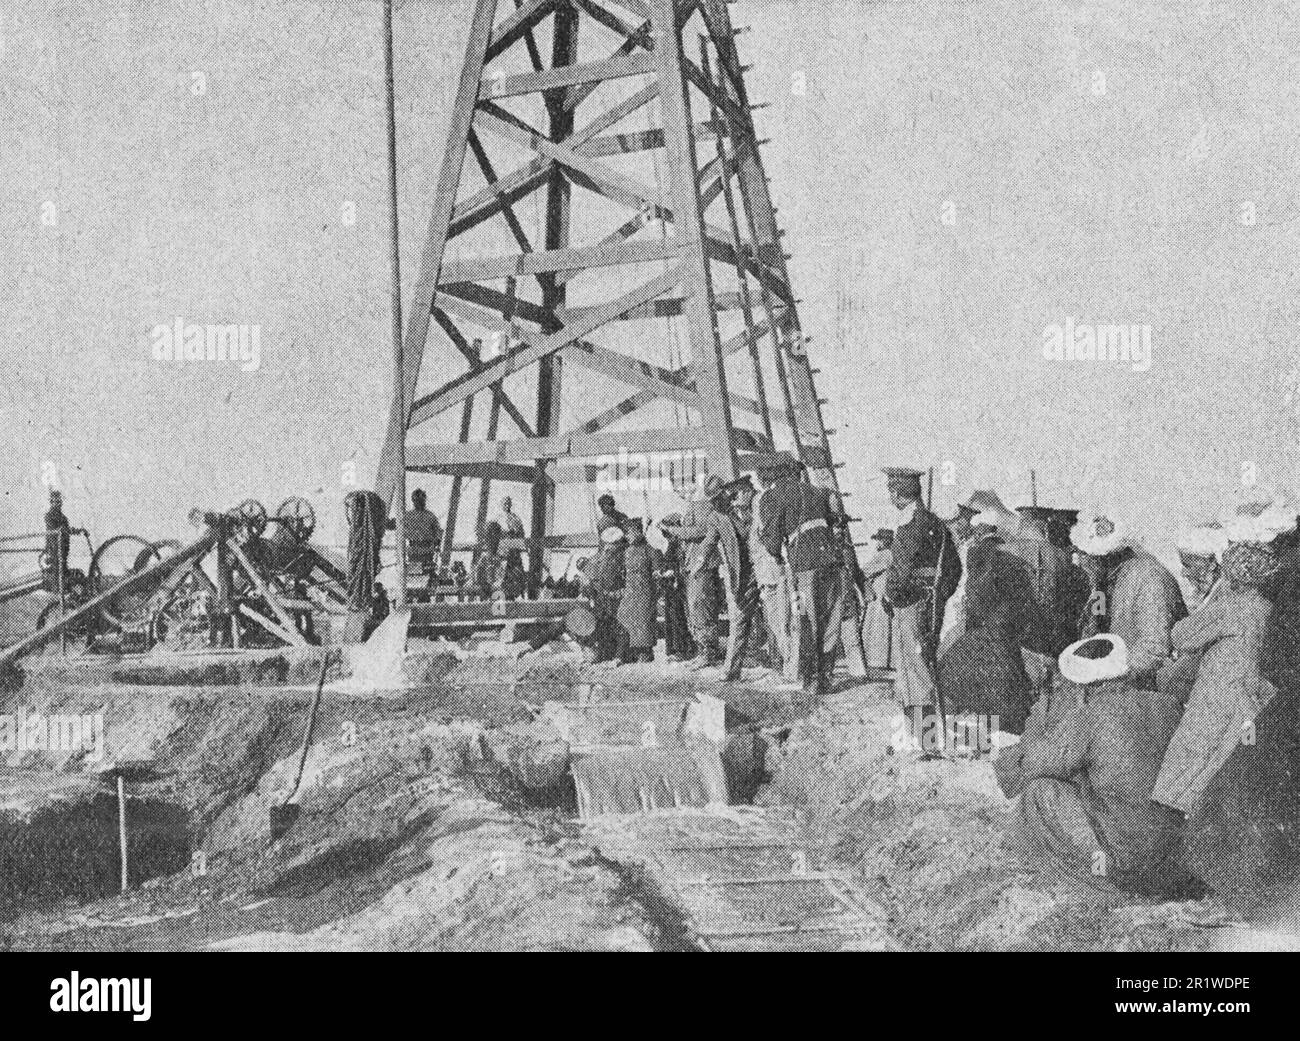 Pompaggio di acqua da un pozzo completato in Turkestan. Foto dal 1910. Foto Stock